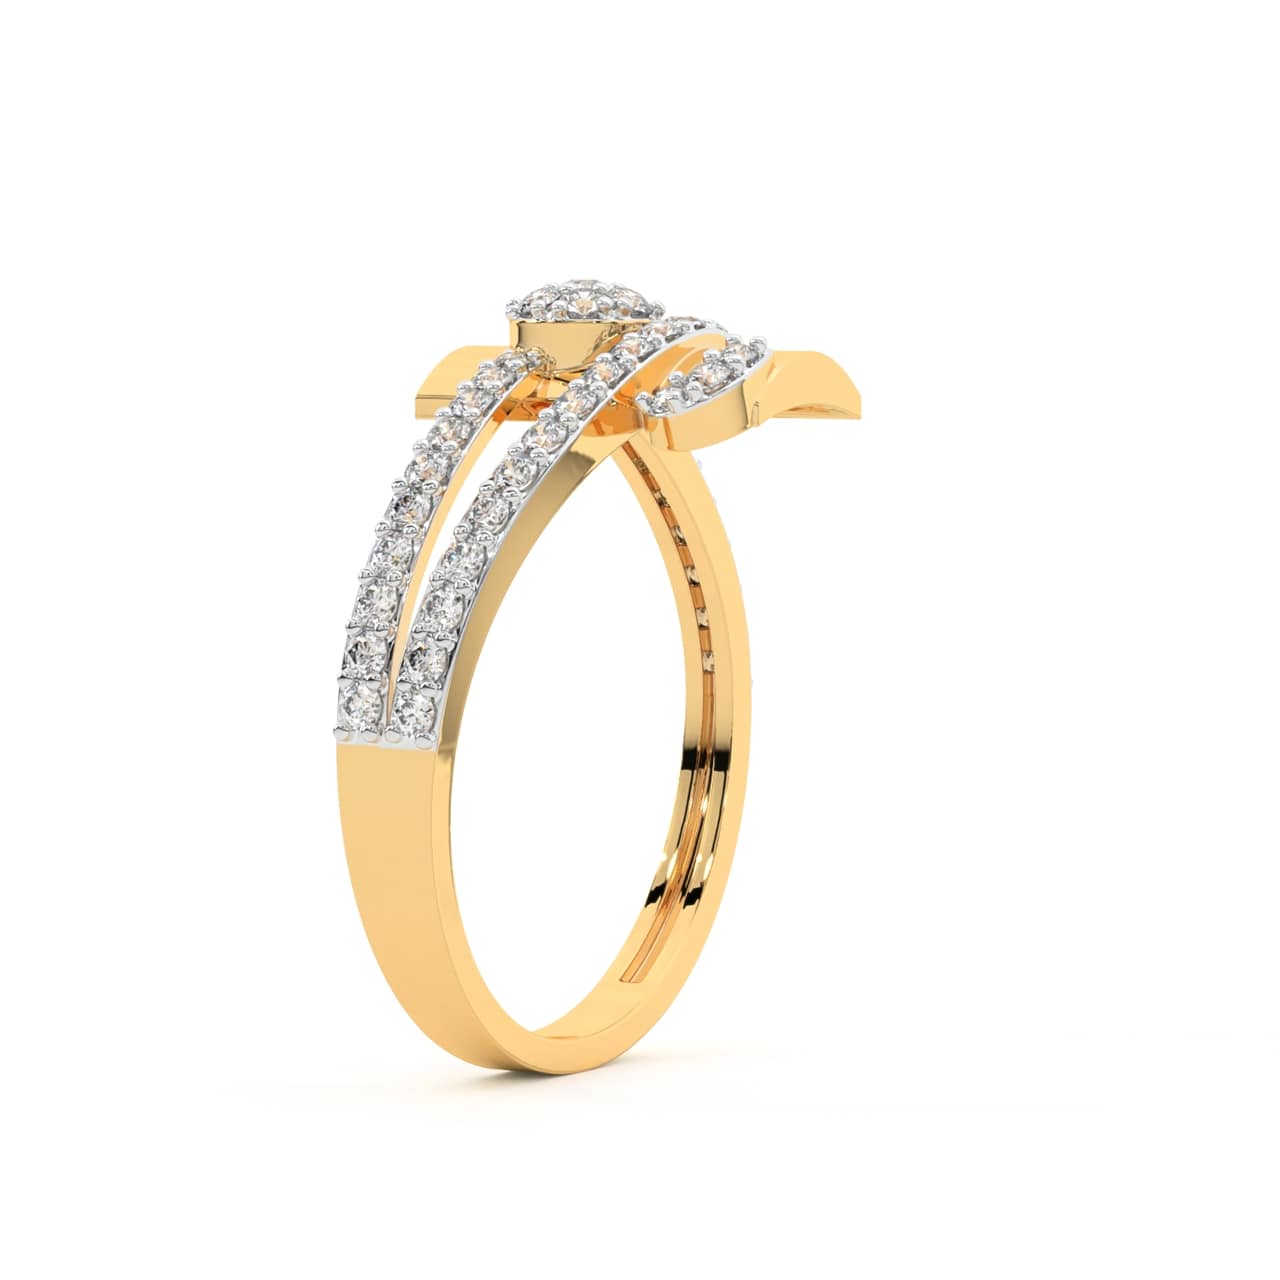 Henry Round Diamond Engagement Ring